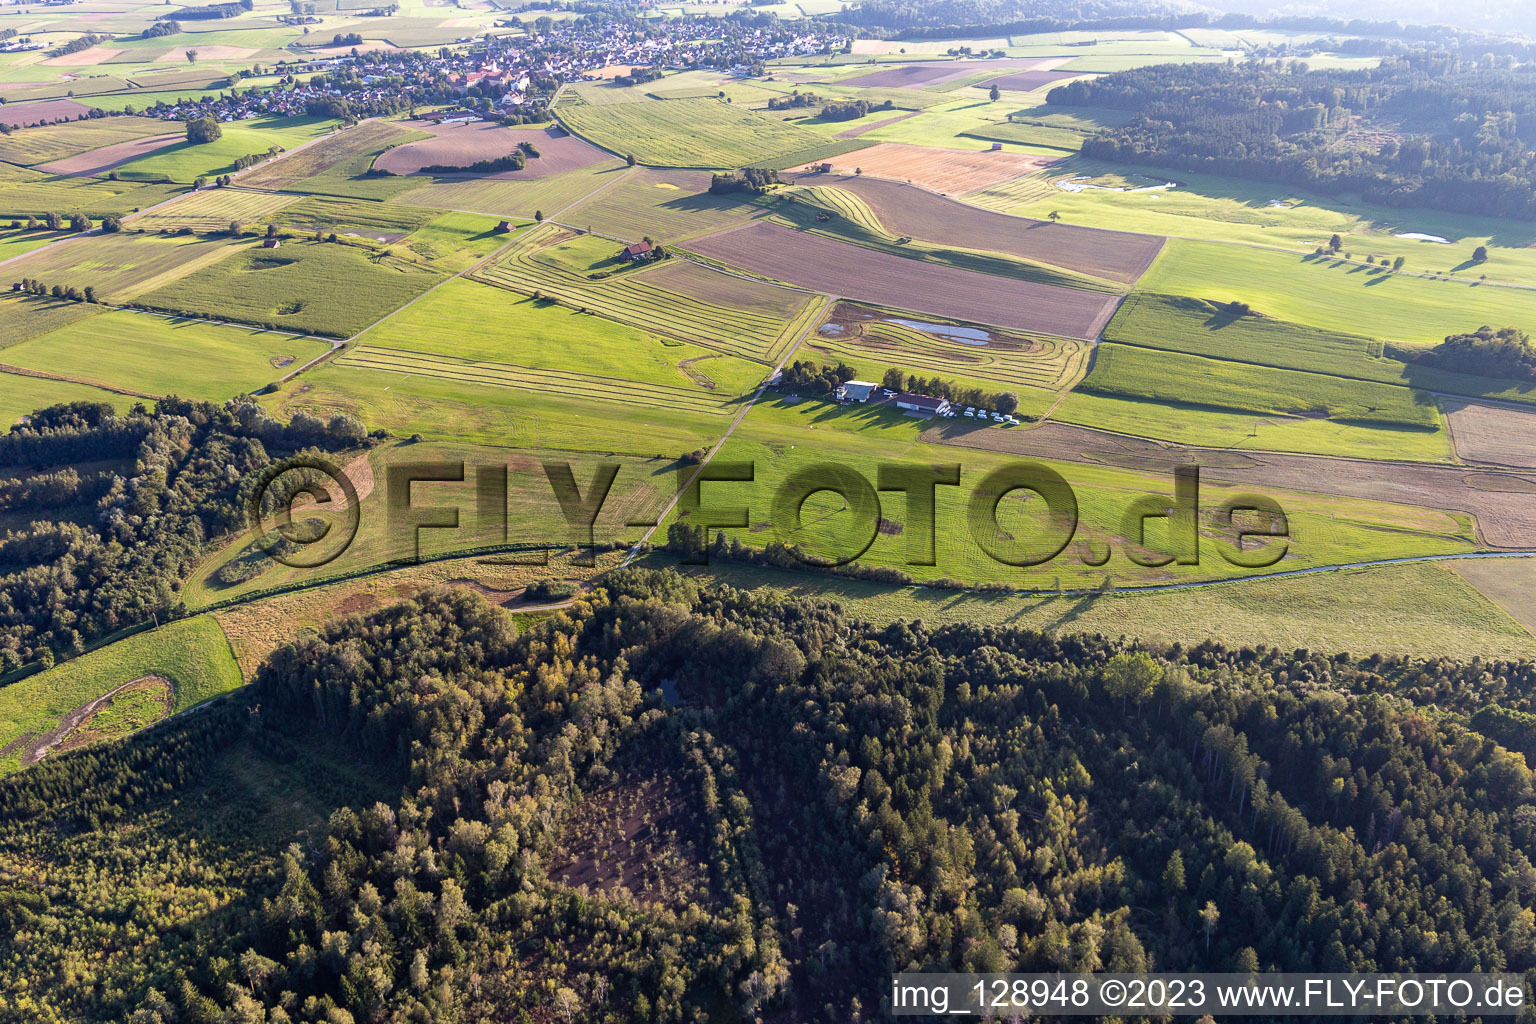 Vue aérienne de Aérodrome sportif et de voile de Reute à le quartier Obermöllenbronn in Bad Waldsee dans le département Bade-Wurtemberg, Allemagne